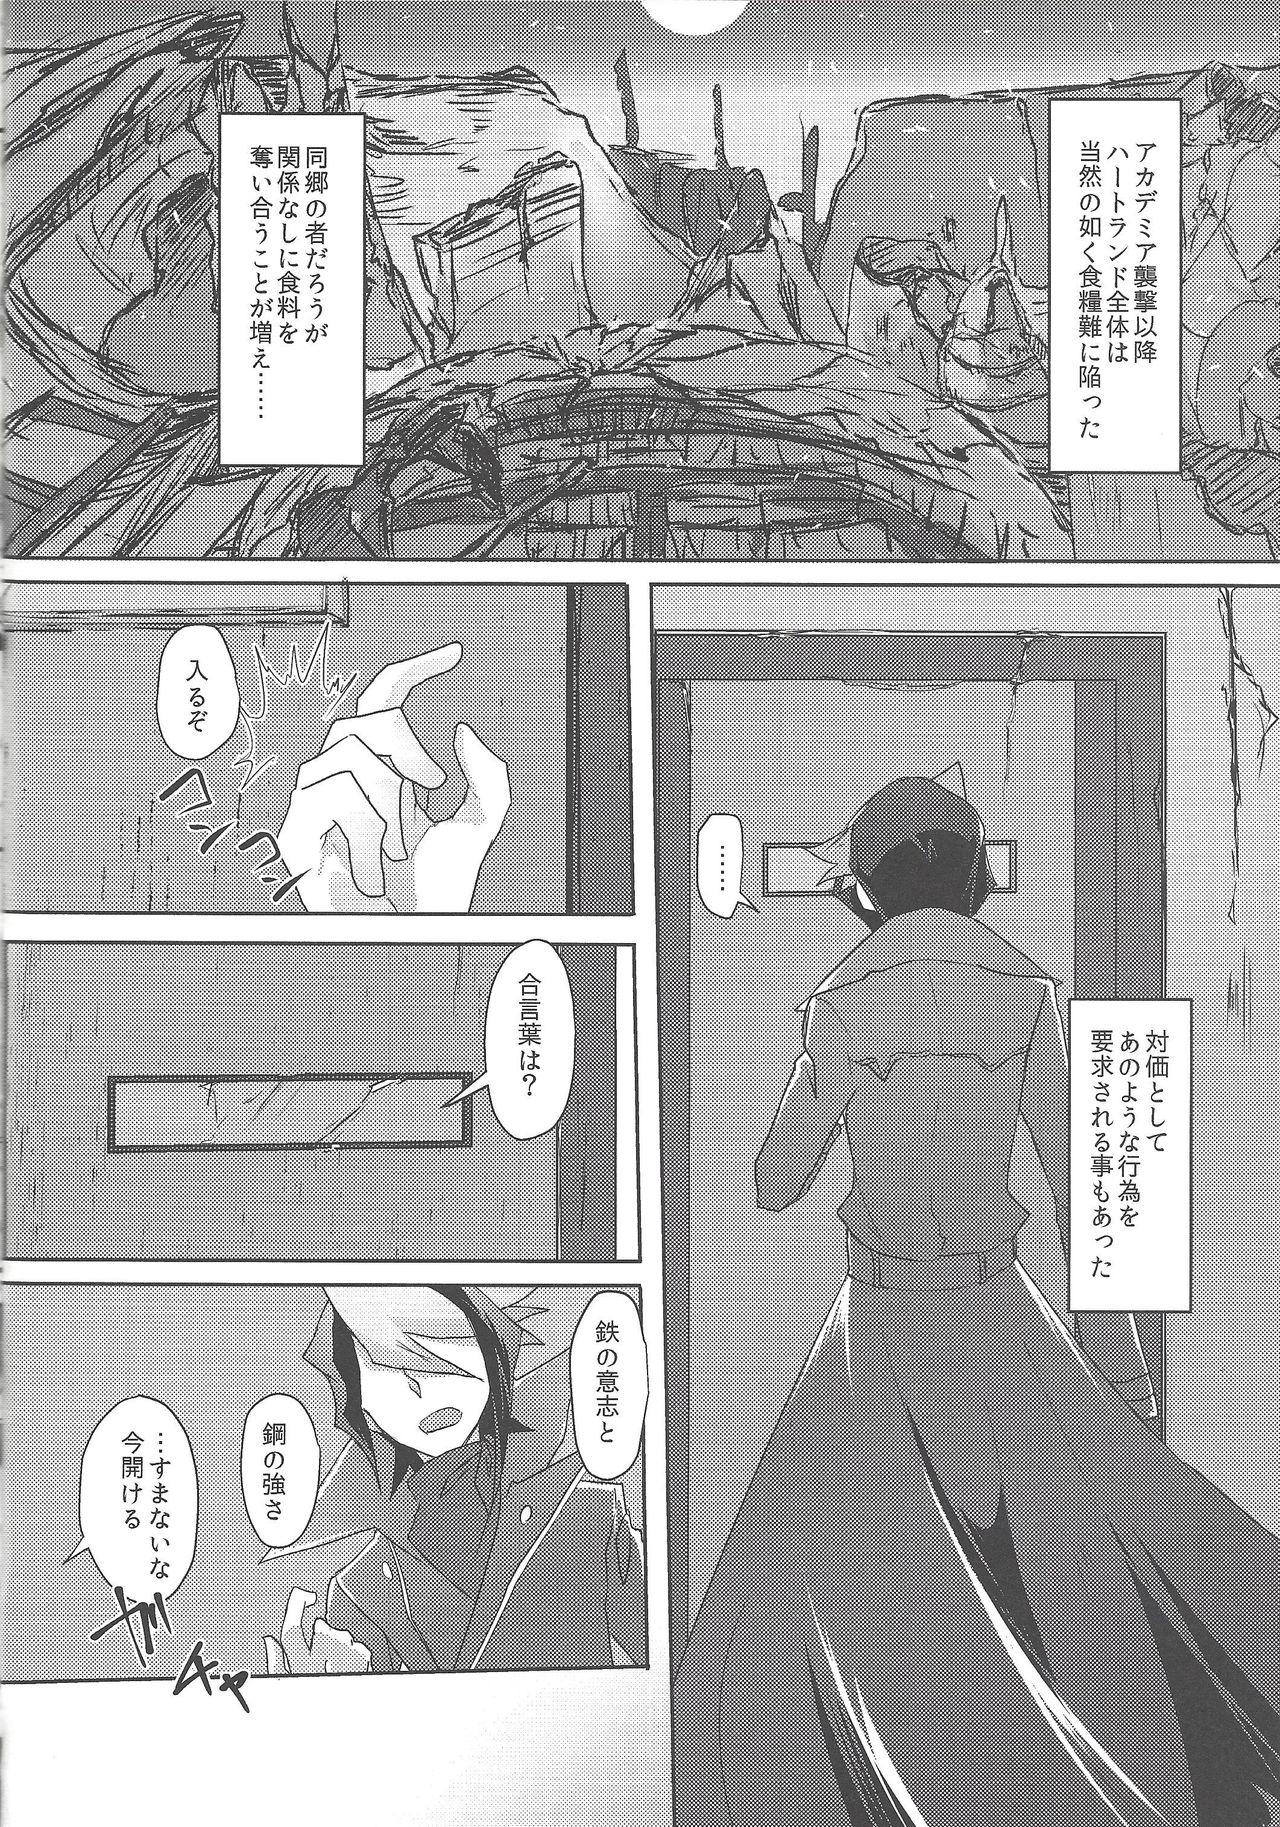 Uncensored Kimi to kokoro no risōkyō - Yu-gi-oh arc-v POV - Page 5